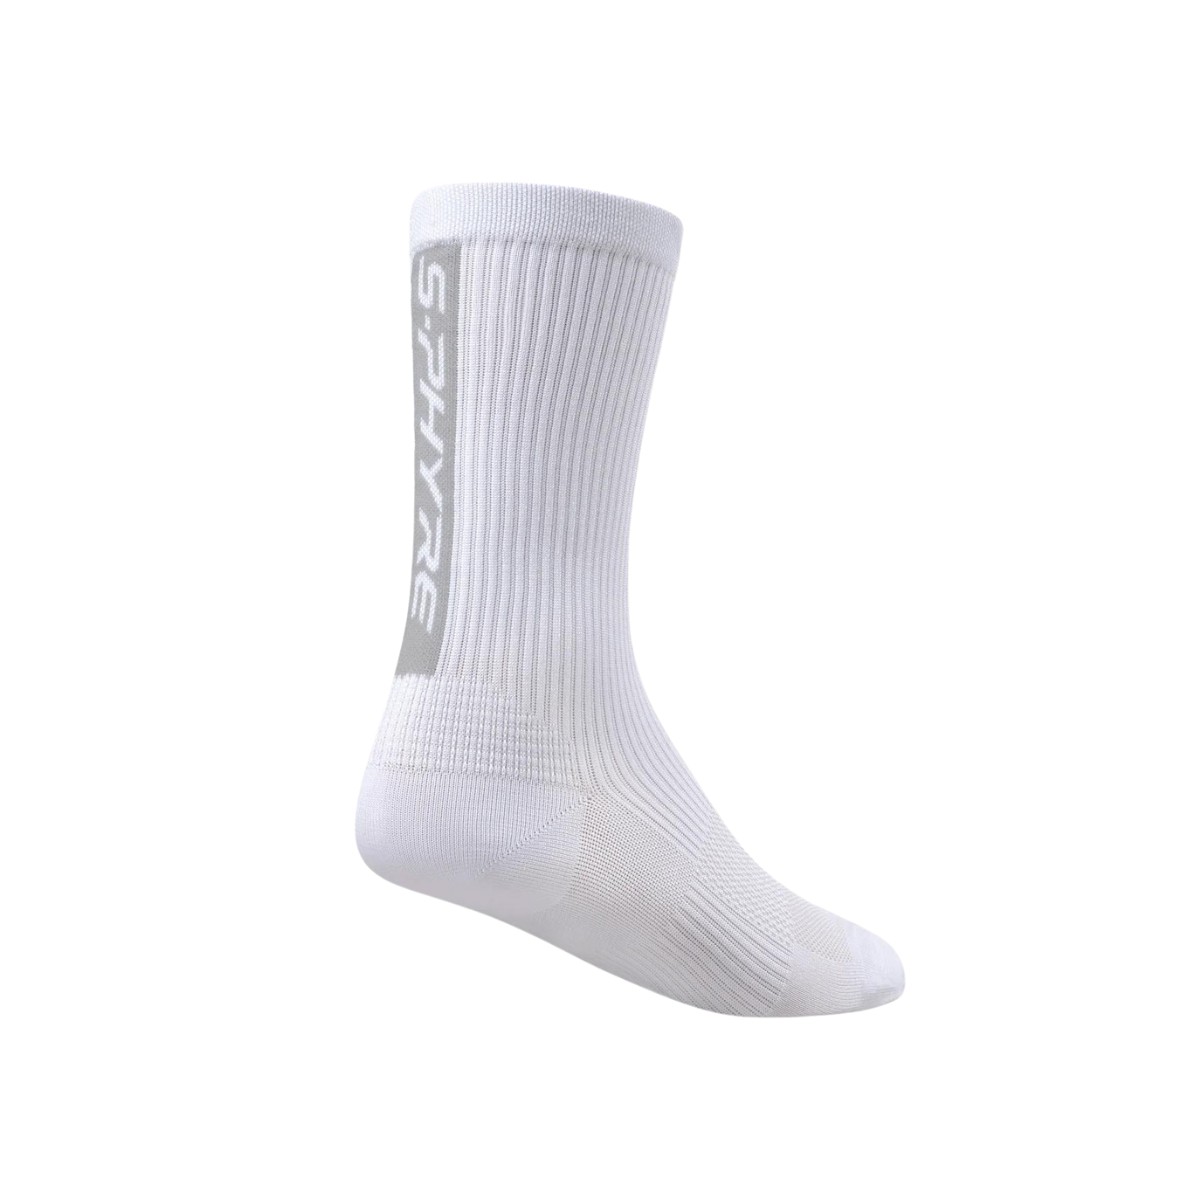 man mit günstig Kaufen-Shimano S-Phyre Flash Weiße Socken, Größe L/XL. Shimano S-Phyre Flash Weiße Socken, Größe L/XL <![CDATA[Shimano S-Phyre Flash Socken Entdecken Sie maximale Leistung mit den Shimano S-Phyre Flash Socken, die speziell für Hoch